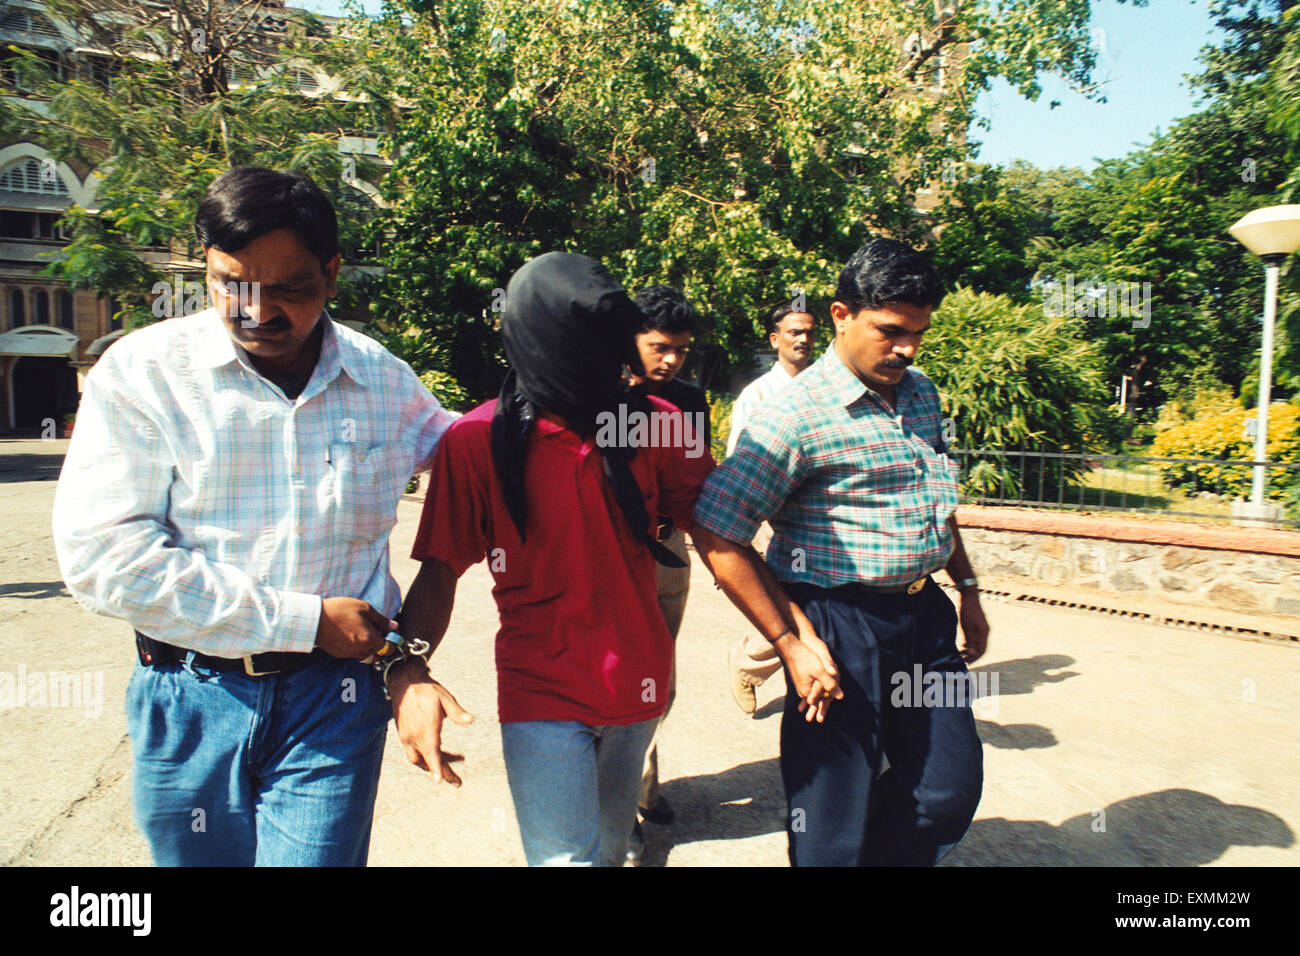 Masque couvert visage homme à capuche criminel attrapé police escortée Bombay Mumbai Maharashtra Inde Asie Banque D'Images